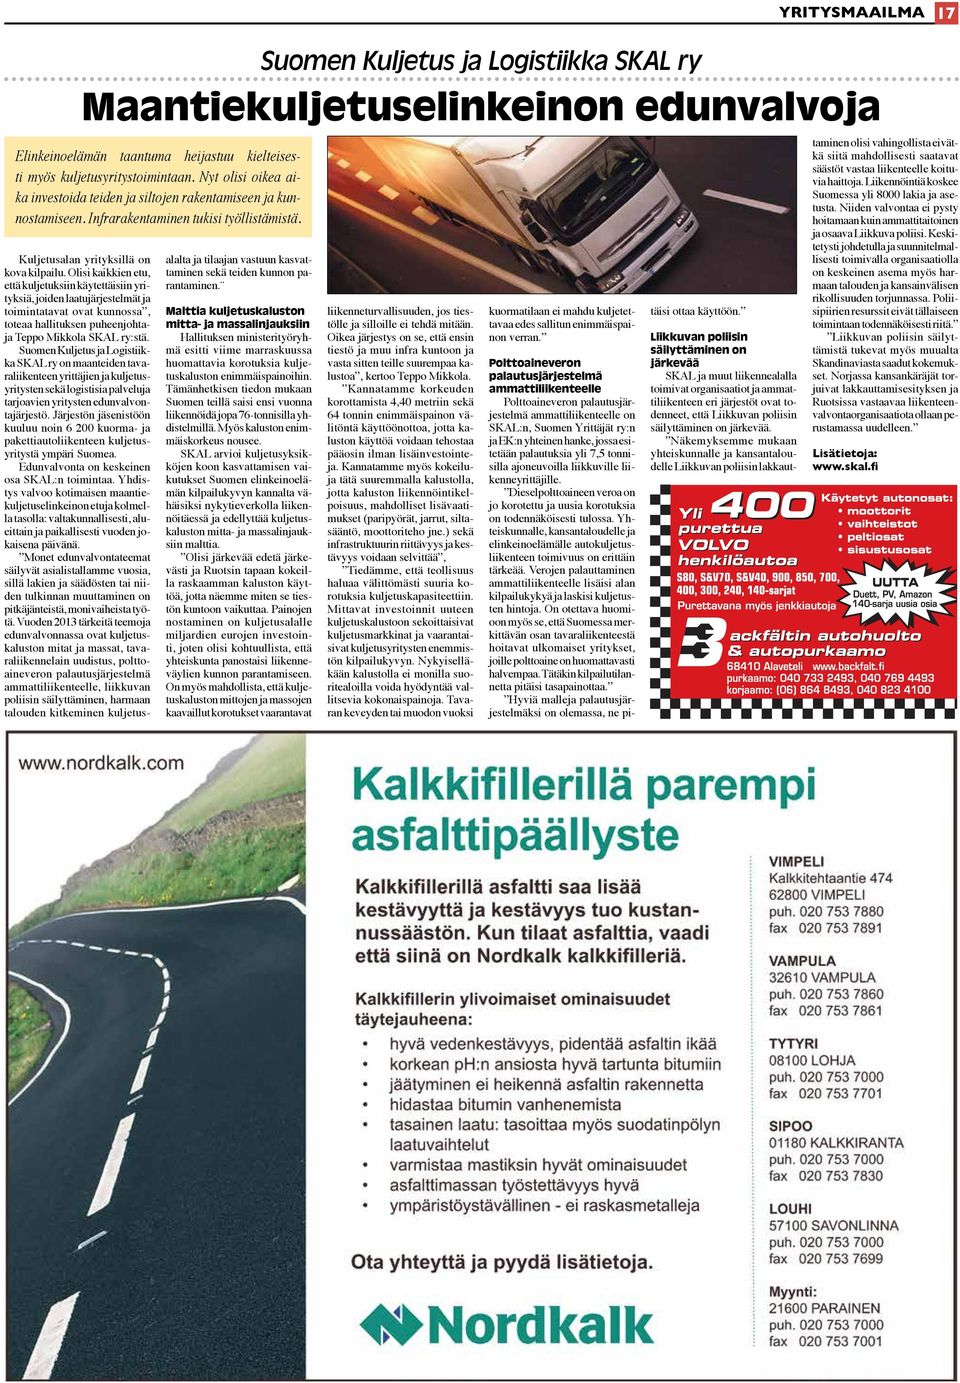 Olisi kaikkien etu, että kuljetuksiin käytettäisiin yrityksiä, joiden laatujärjestelmät ja toimintatavat ovat kunnossa, toteaa hallituksen puheenjohtaja Teppo Mikkola SKAL ry:stä.